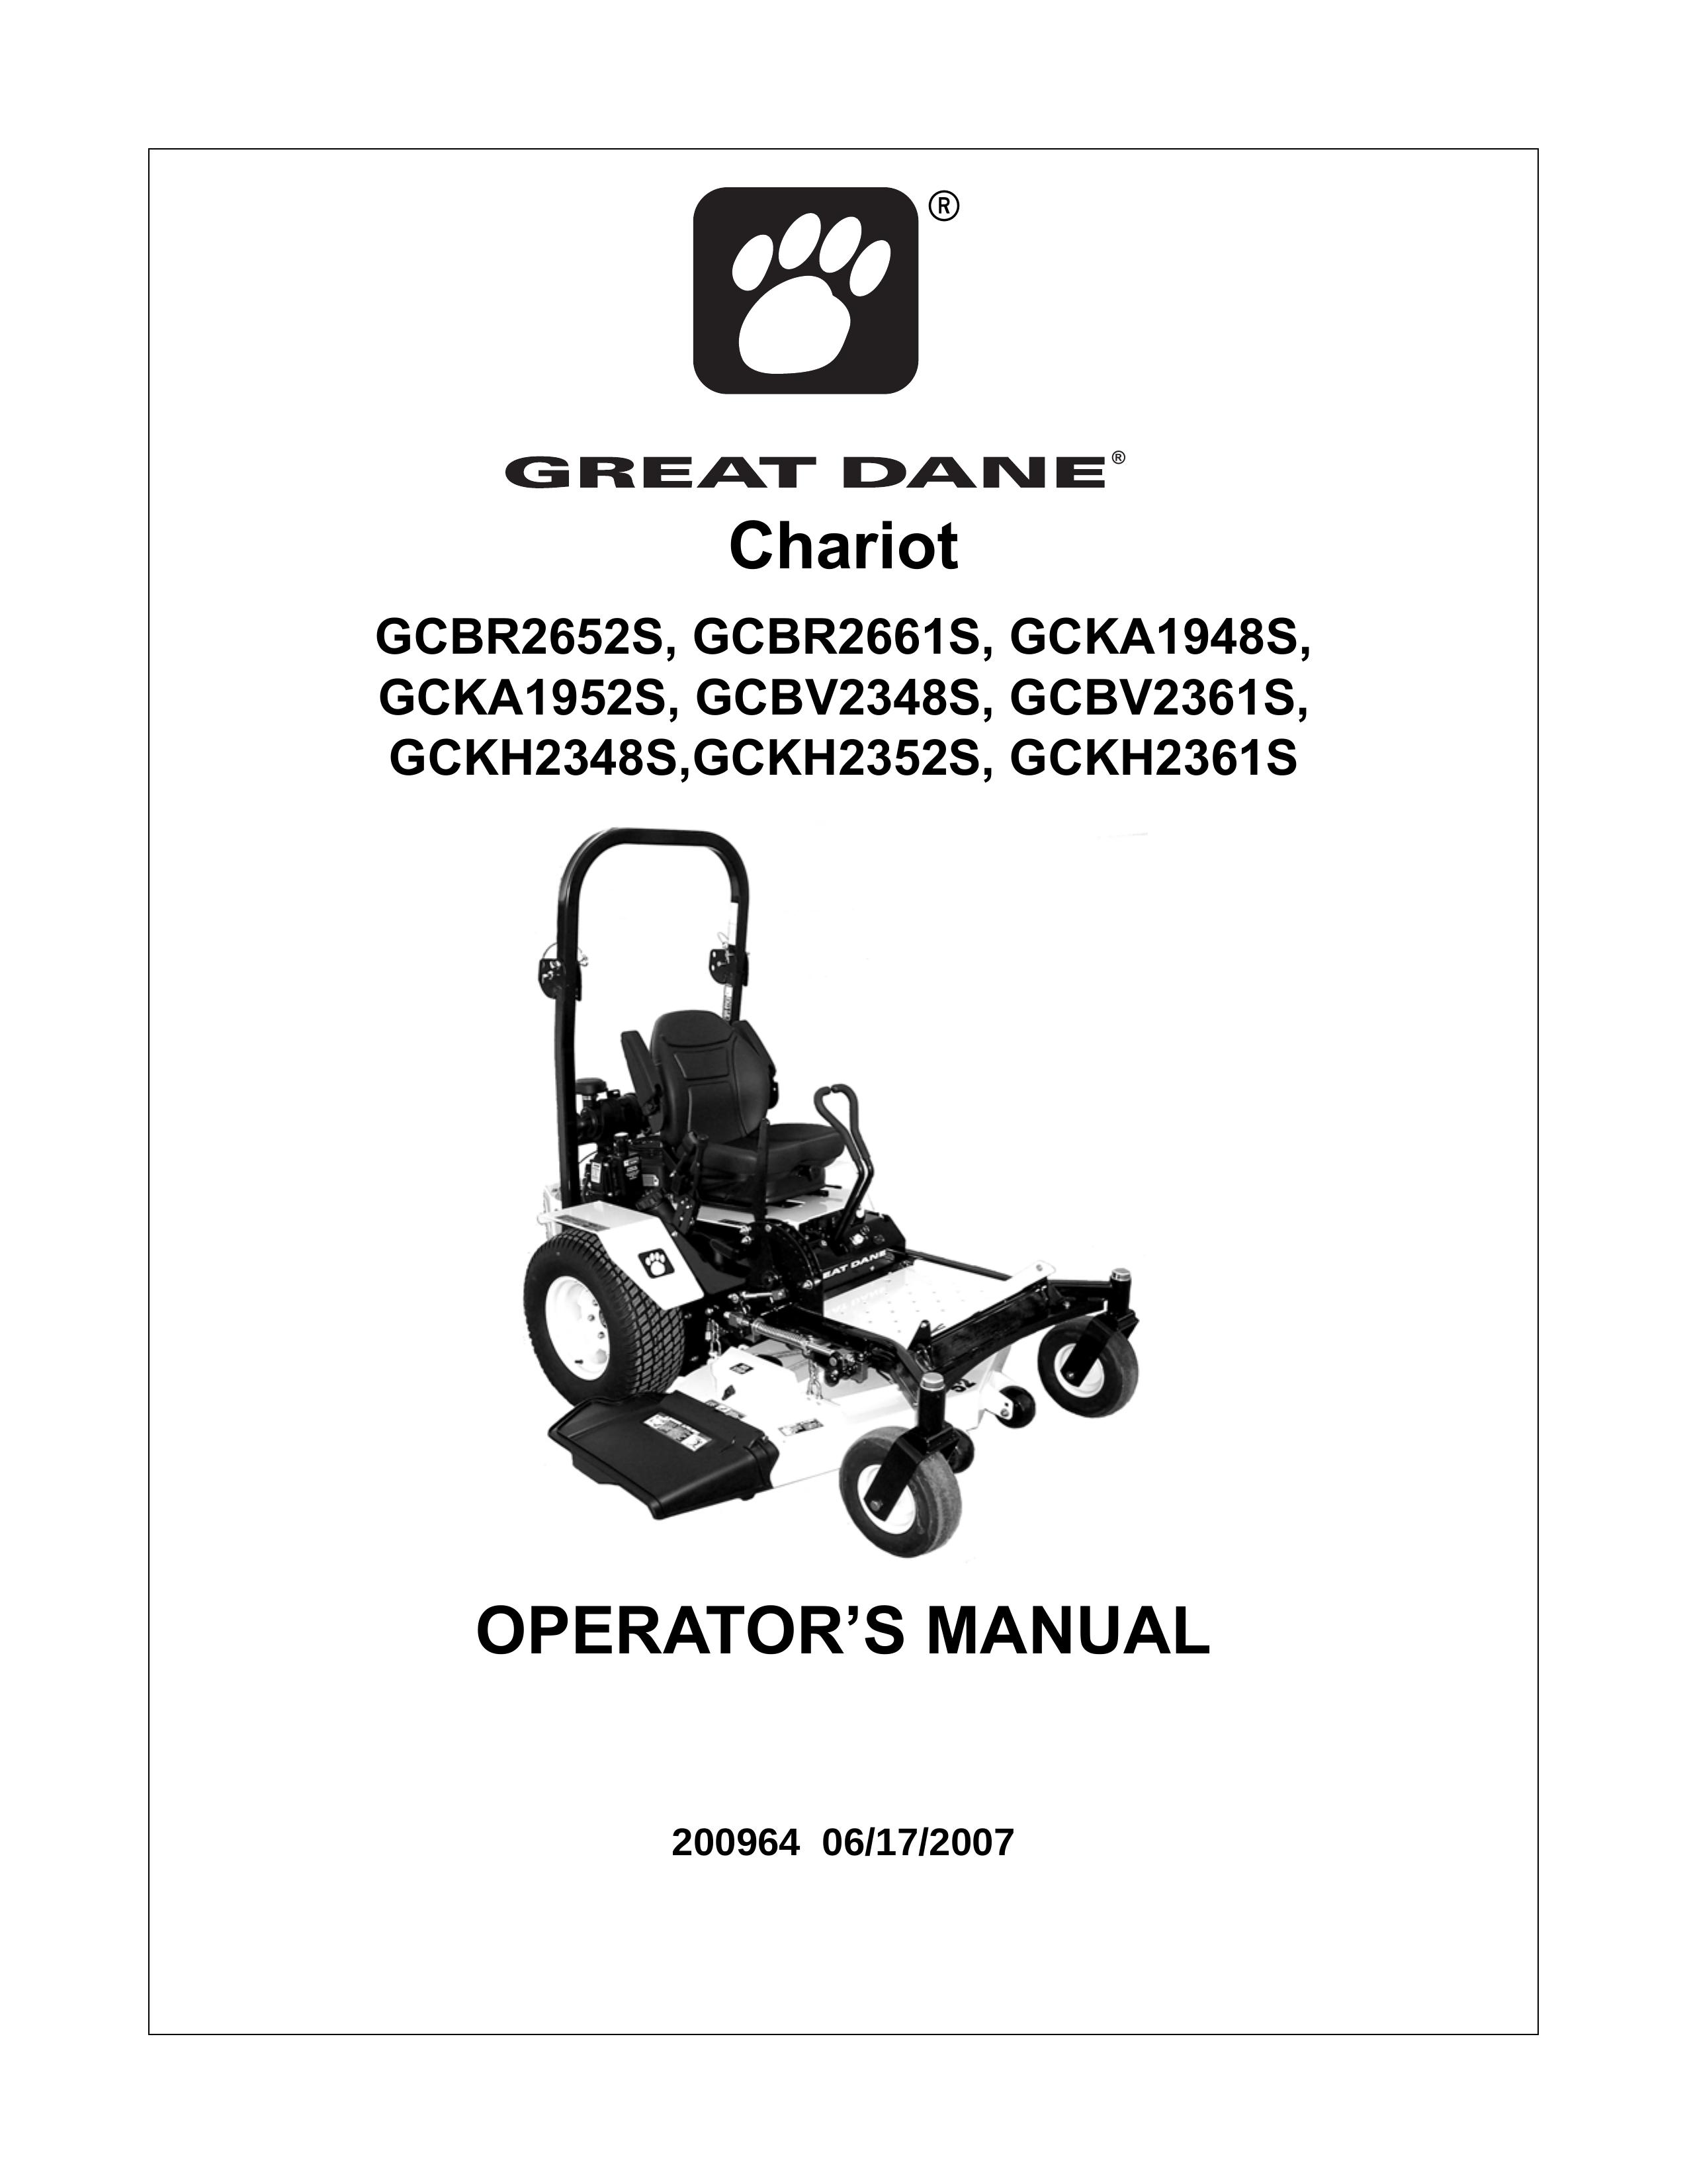 Great Dane GCKH2352S Lawn Mower User Manual